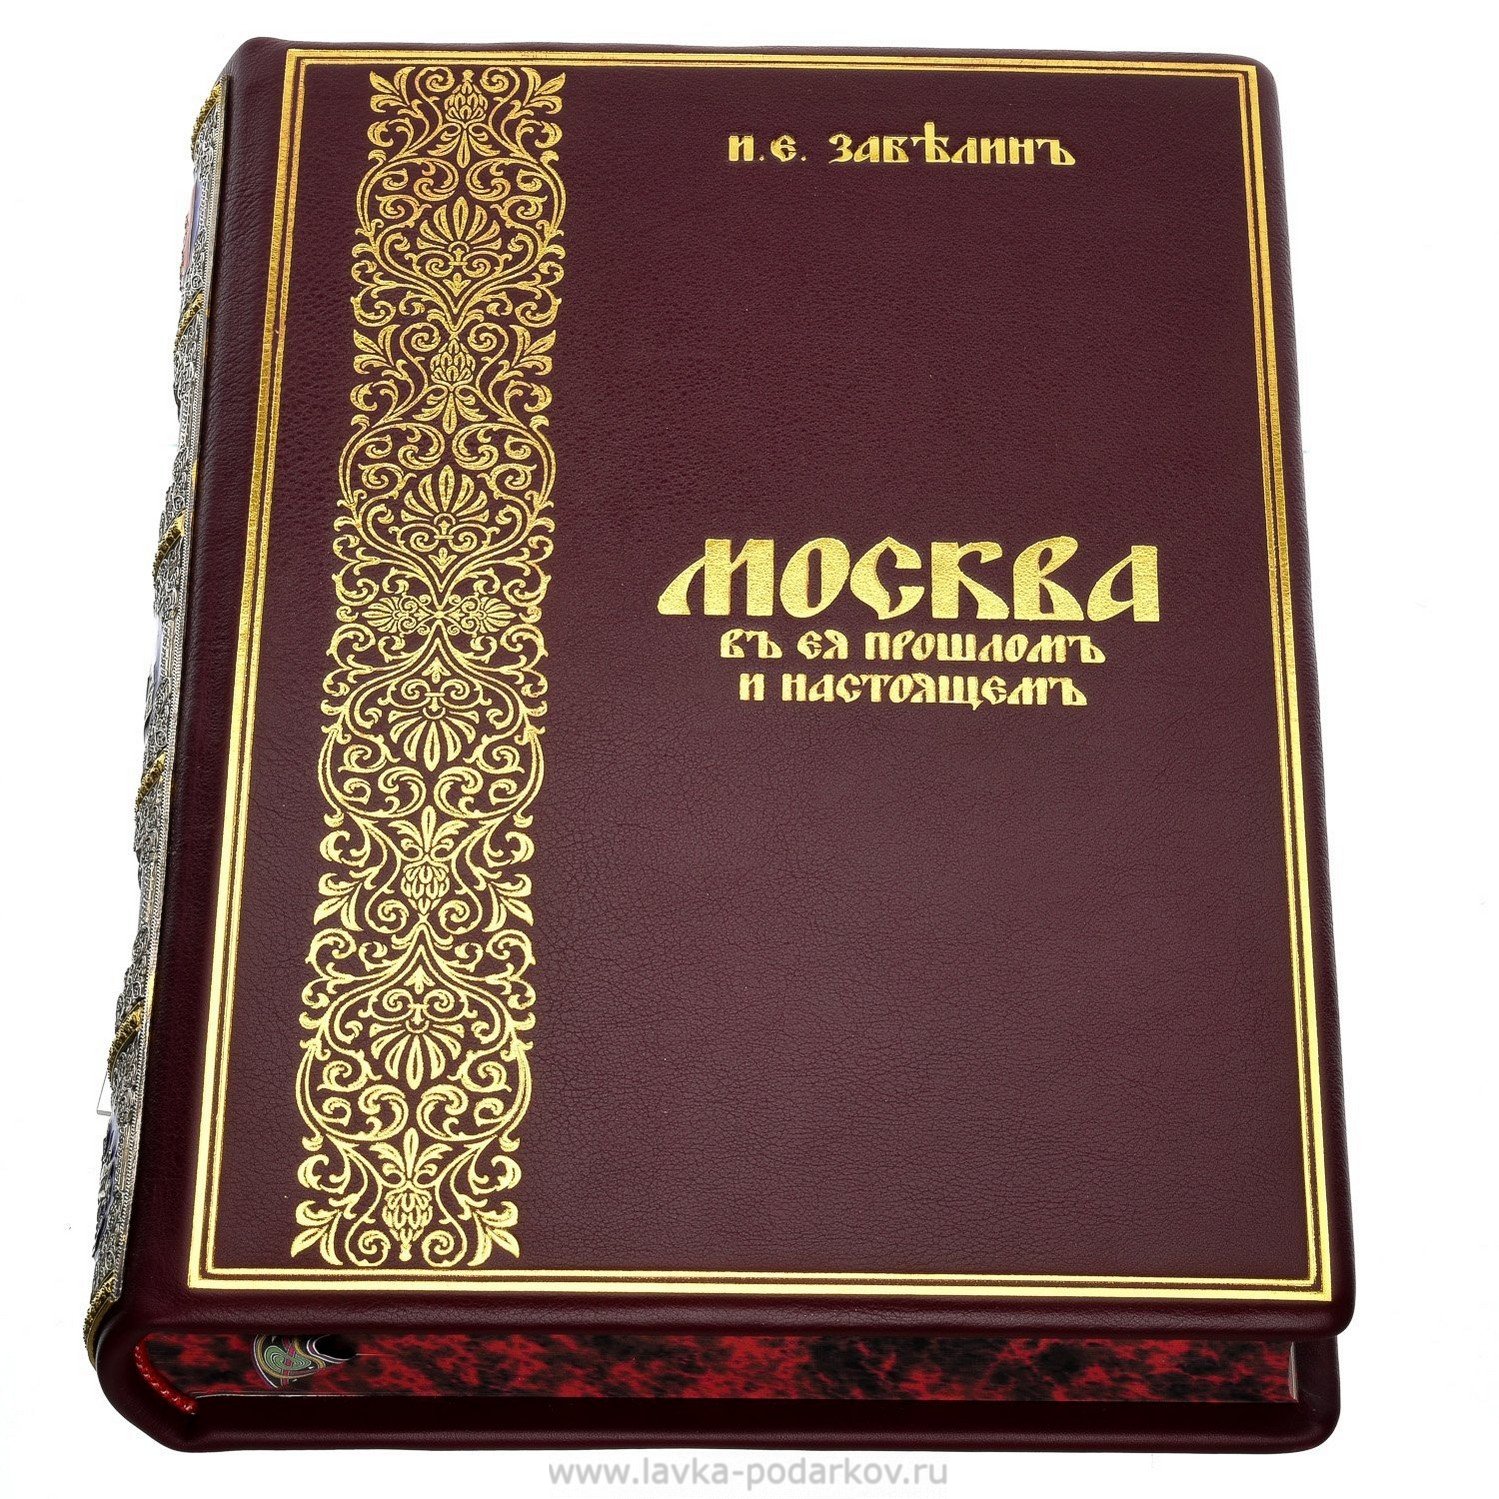 Купить книгу в москве в интернет магазине. Книга Москвы. Турецкие в Москве книга.